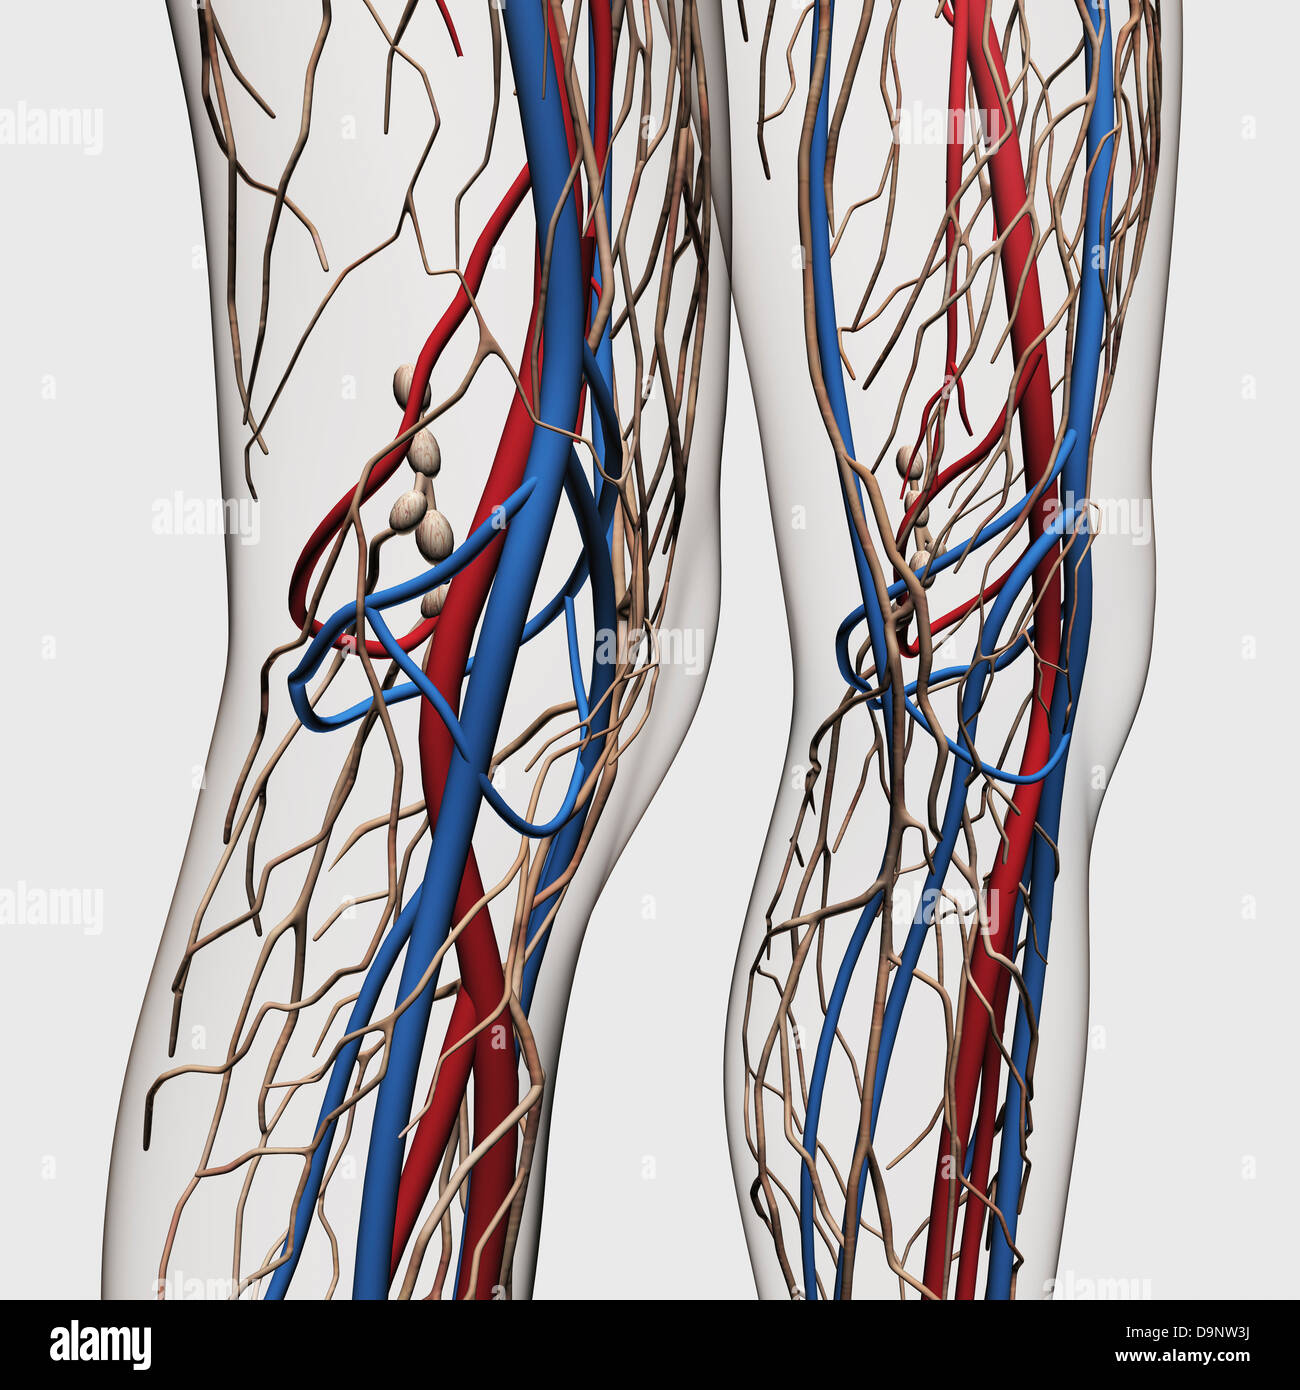 Illustrazione medica delle arterie, vene e sistema linfatico nelle gambe umane. Foto Stock